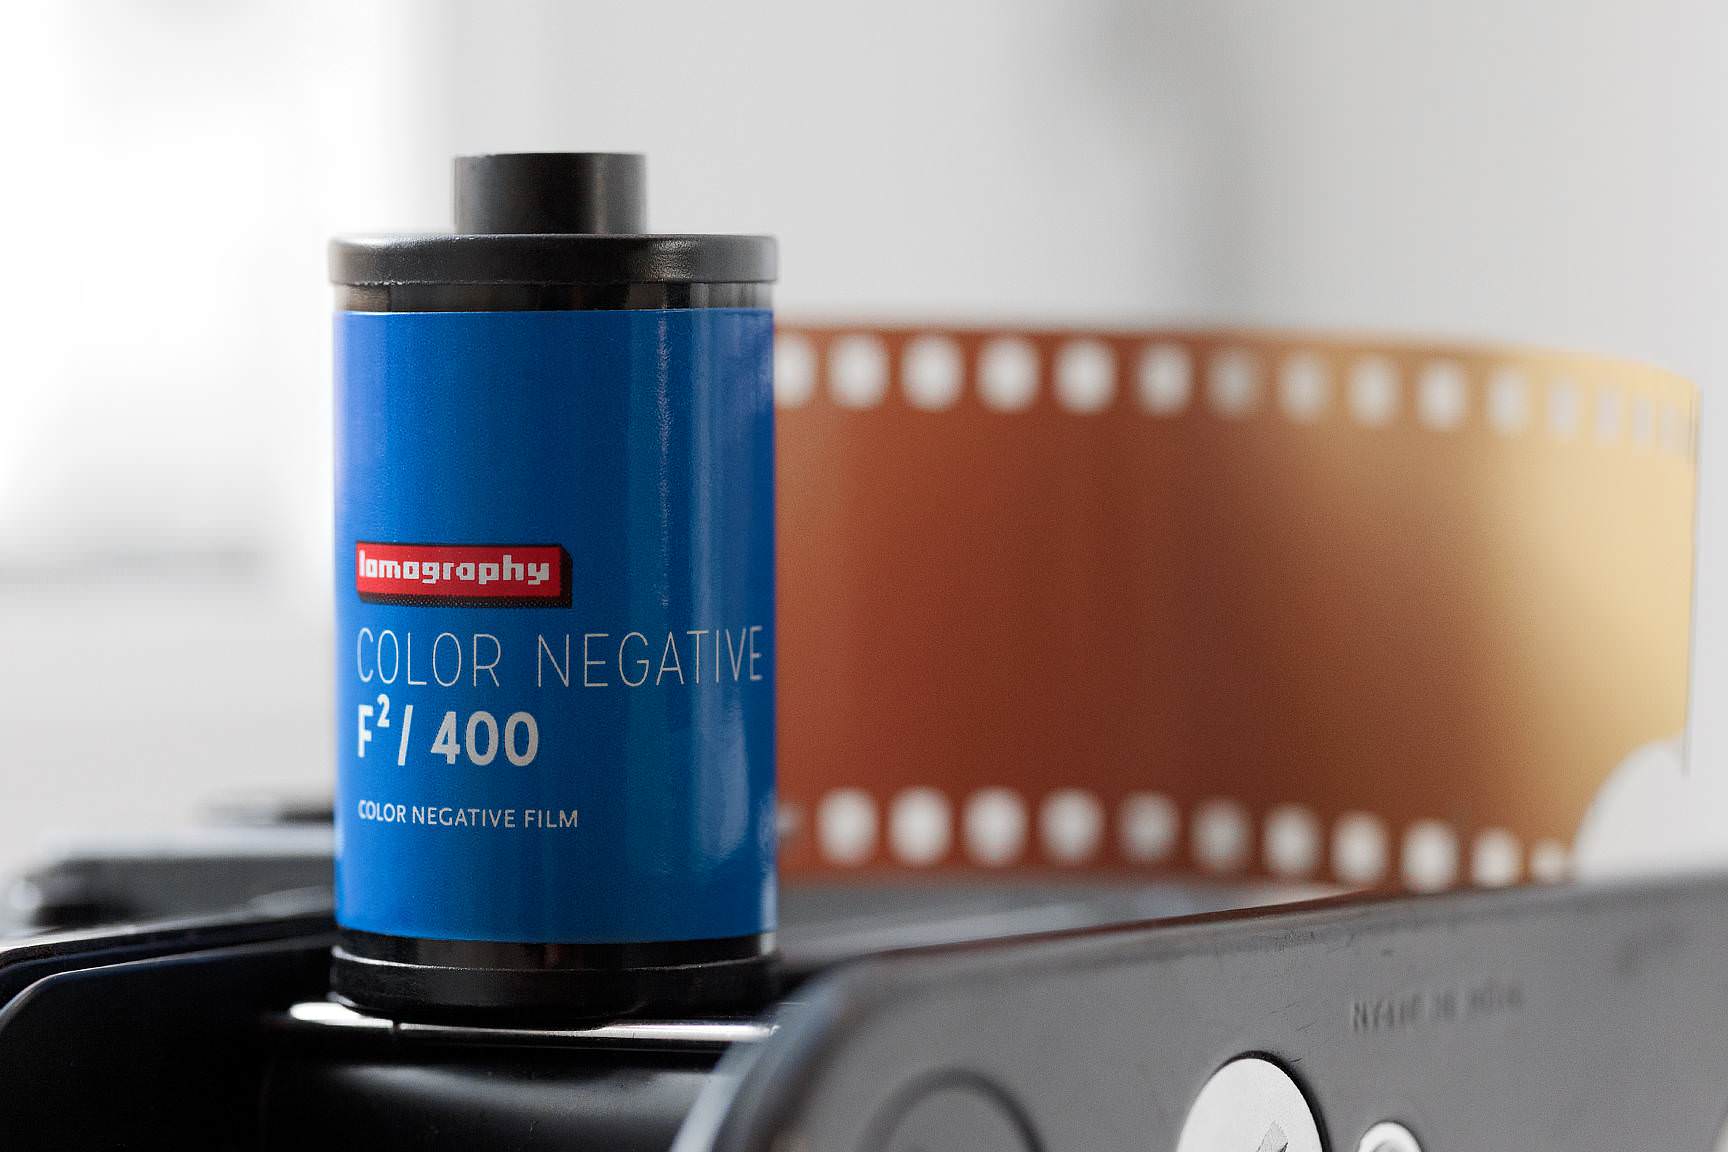 Lomography Color Negative F²/400 Film